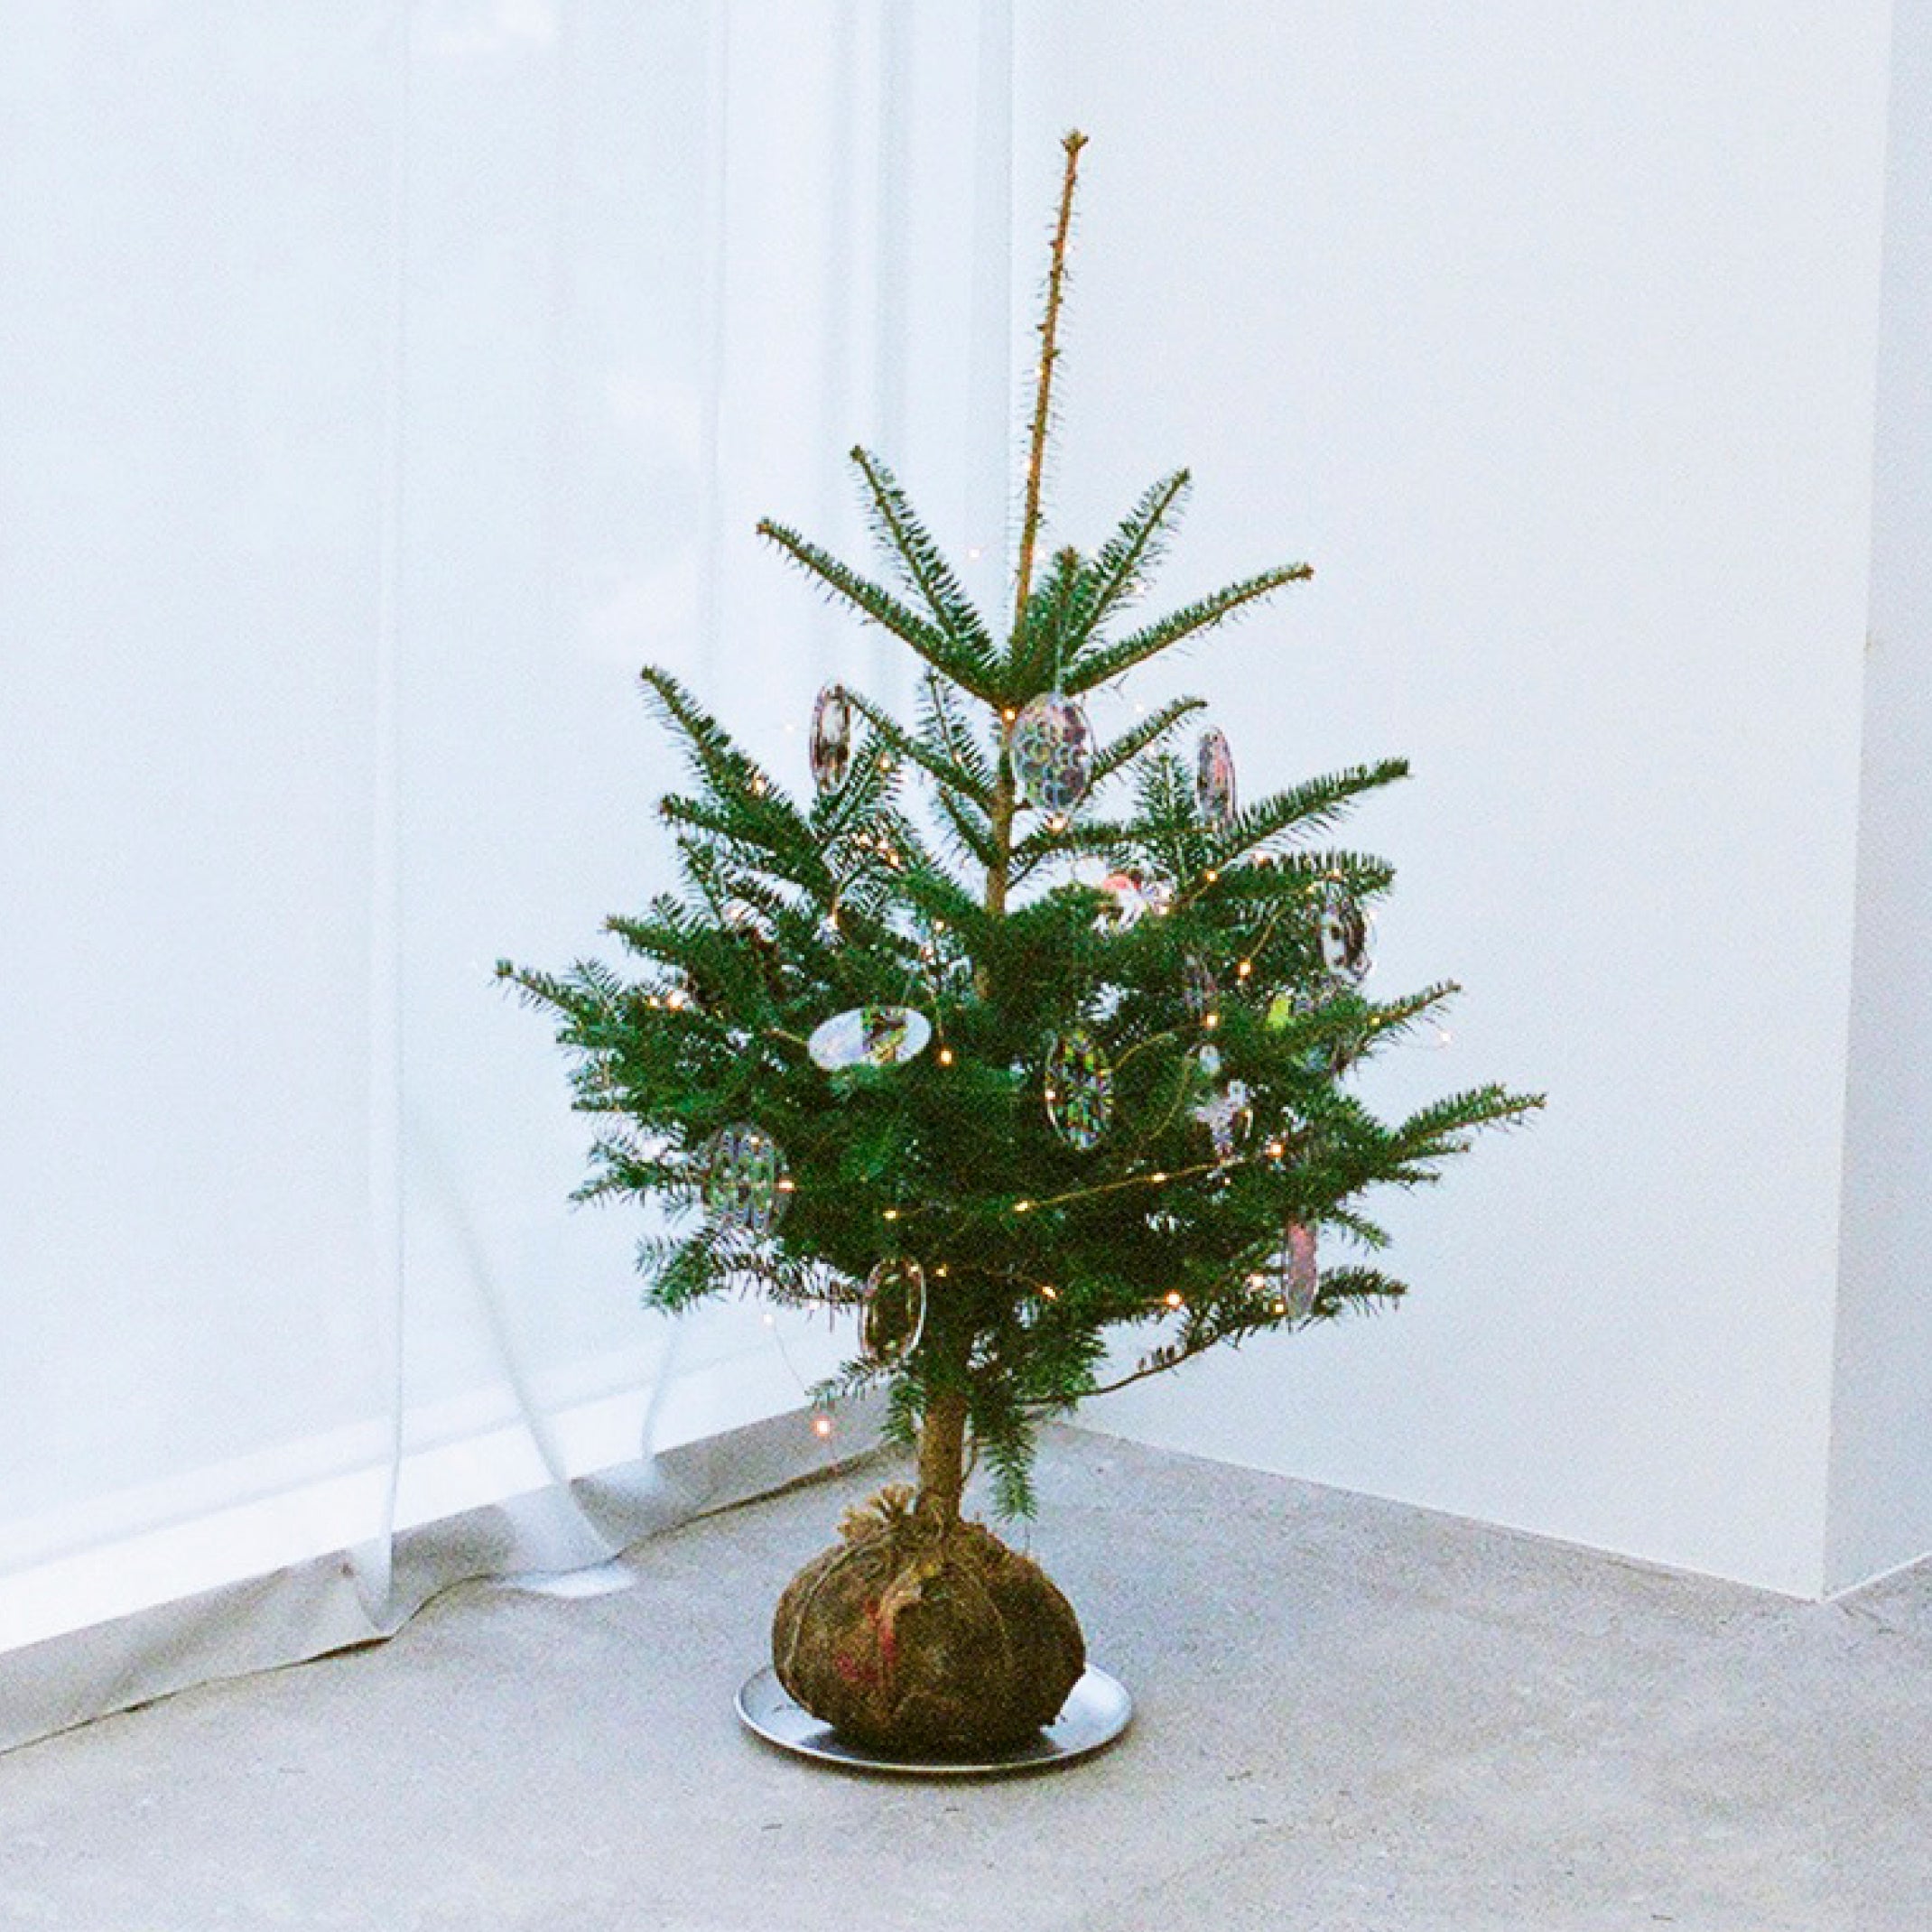 【misen2014 さま】* ornament ❀ モミの木と 森のおうちstamand